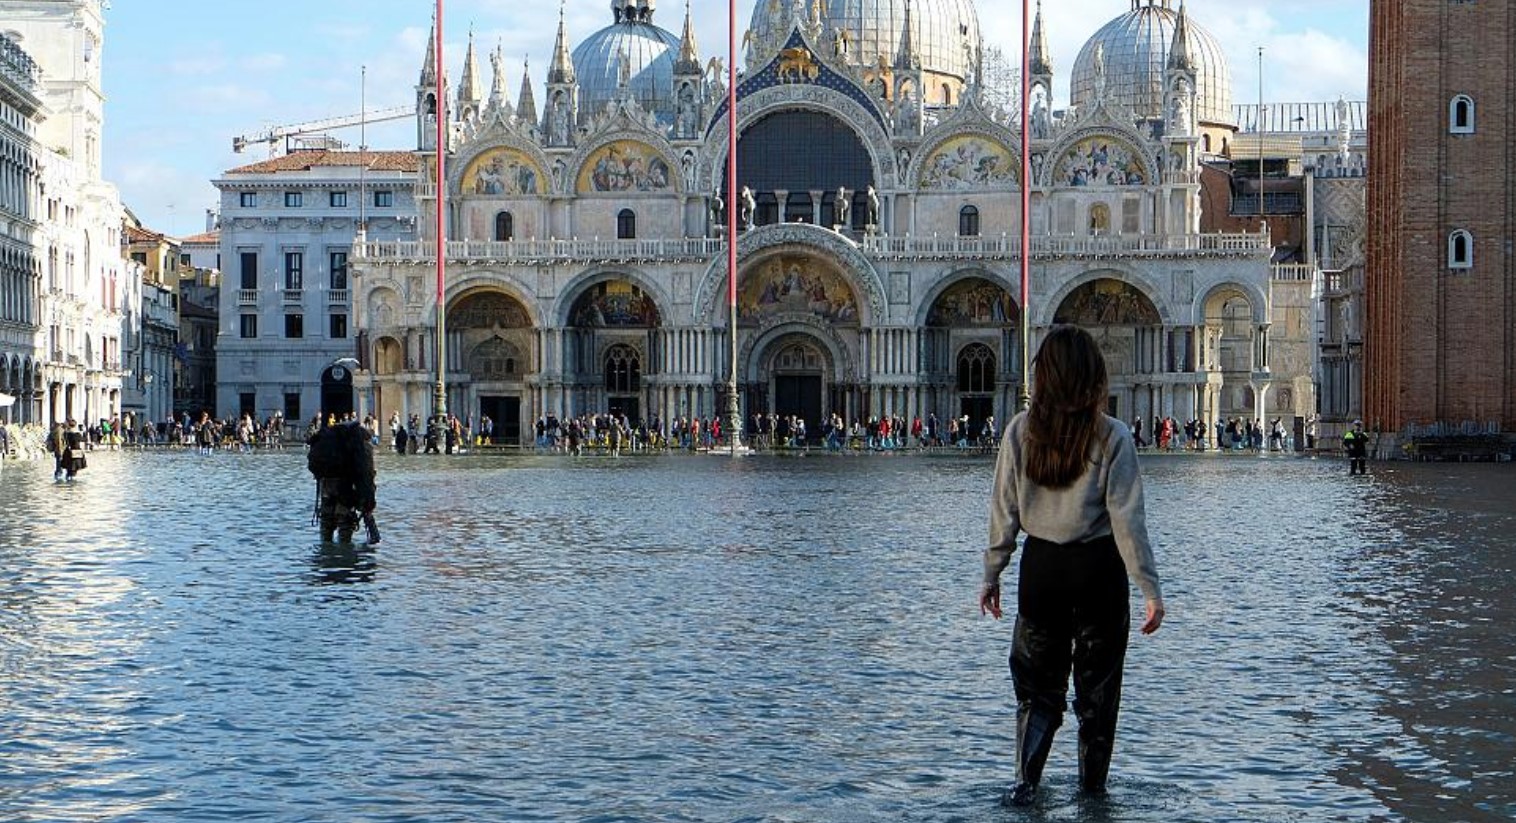 Βενετία: Οι αρχές κήρυξαν την πόλη σε κατάσταση έκτακτης ανάγκης – Κλείνει ξανά η ιστορική πλατεία Αγίου Μάρκου